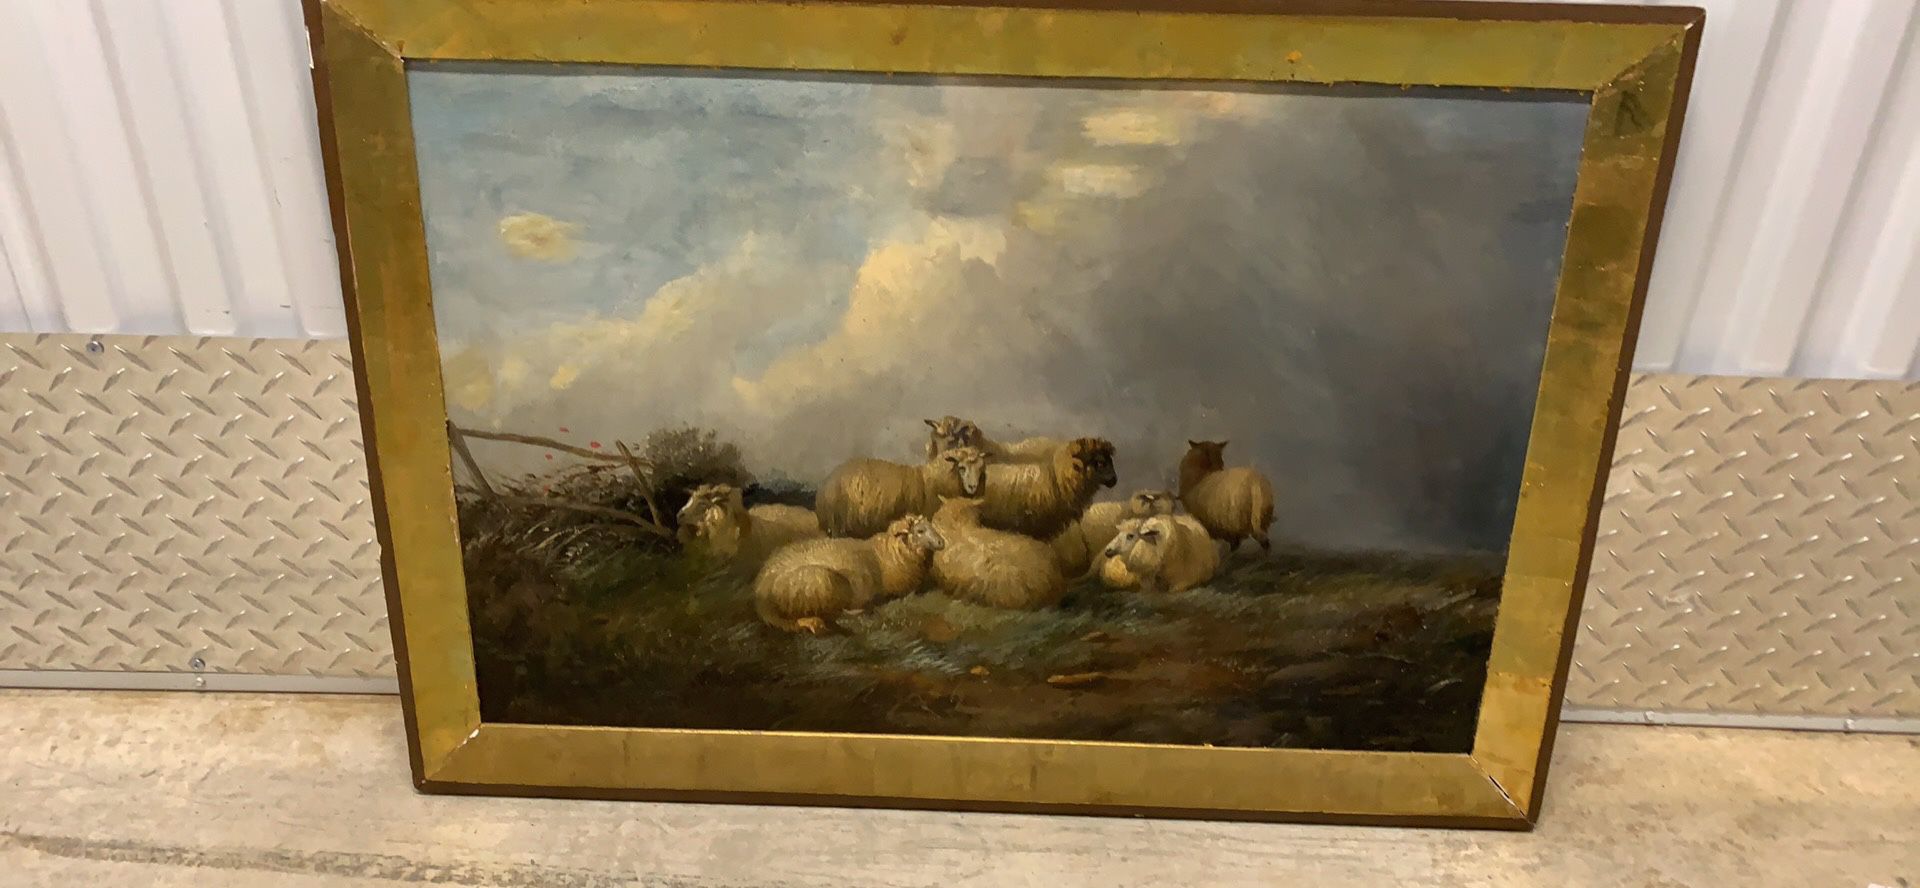 Vintage framed oil painting of sheep landscape